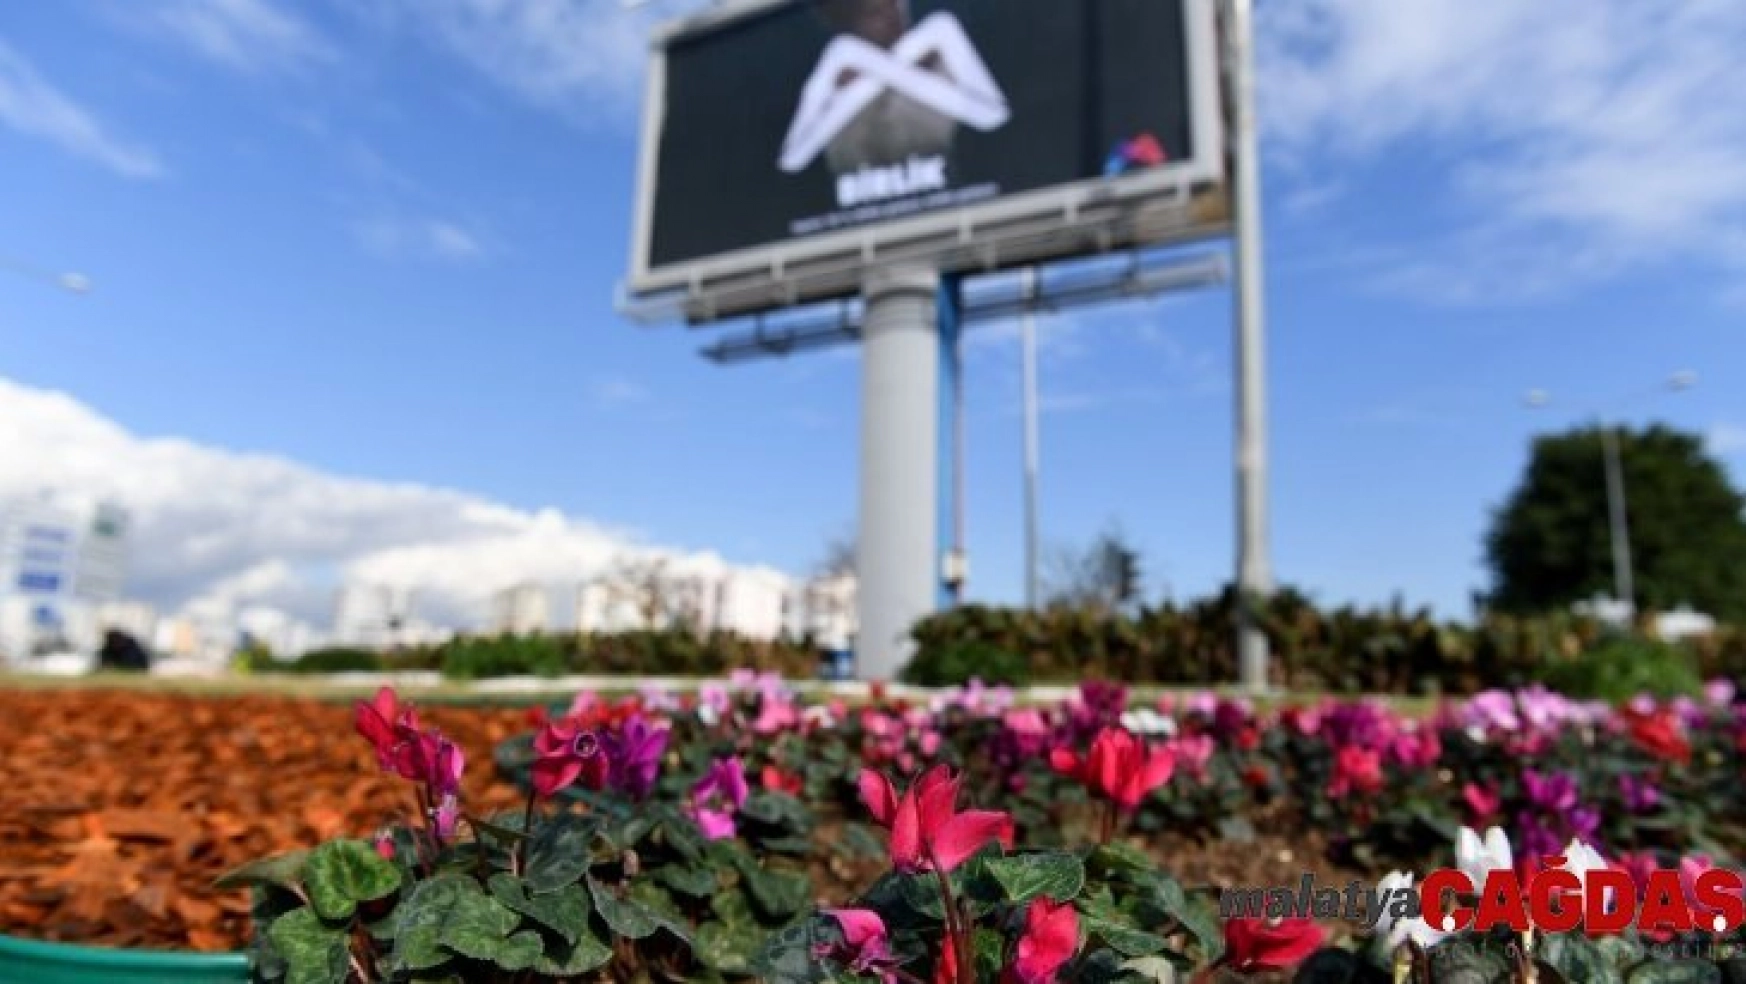 Mersin Büyükşehir Belediyesi, çiçek dikimine devam ediyor